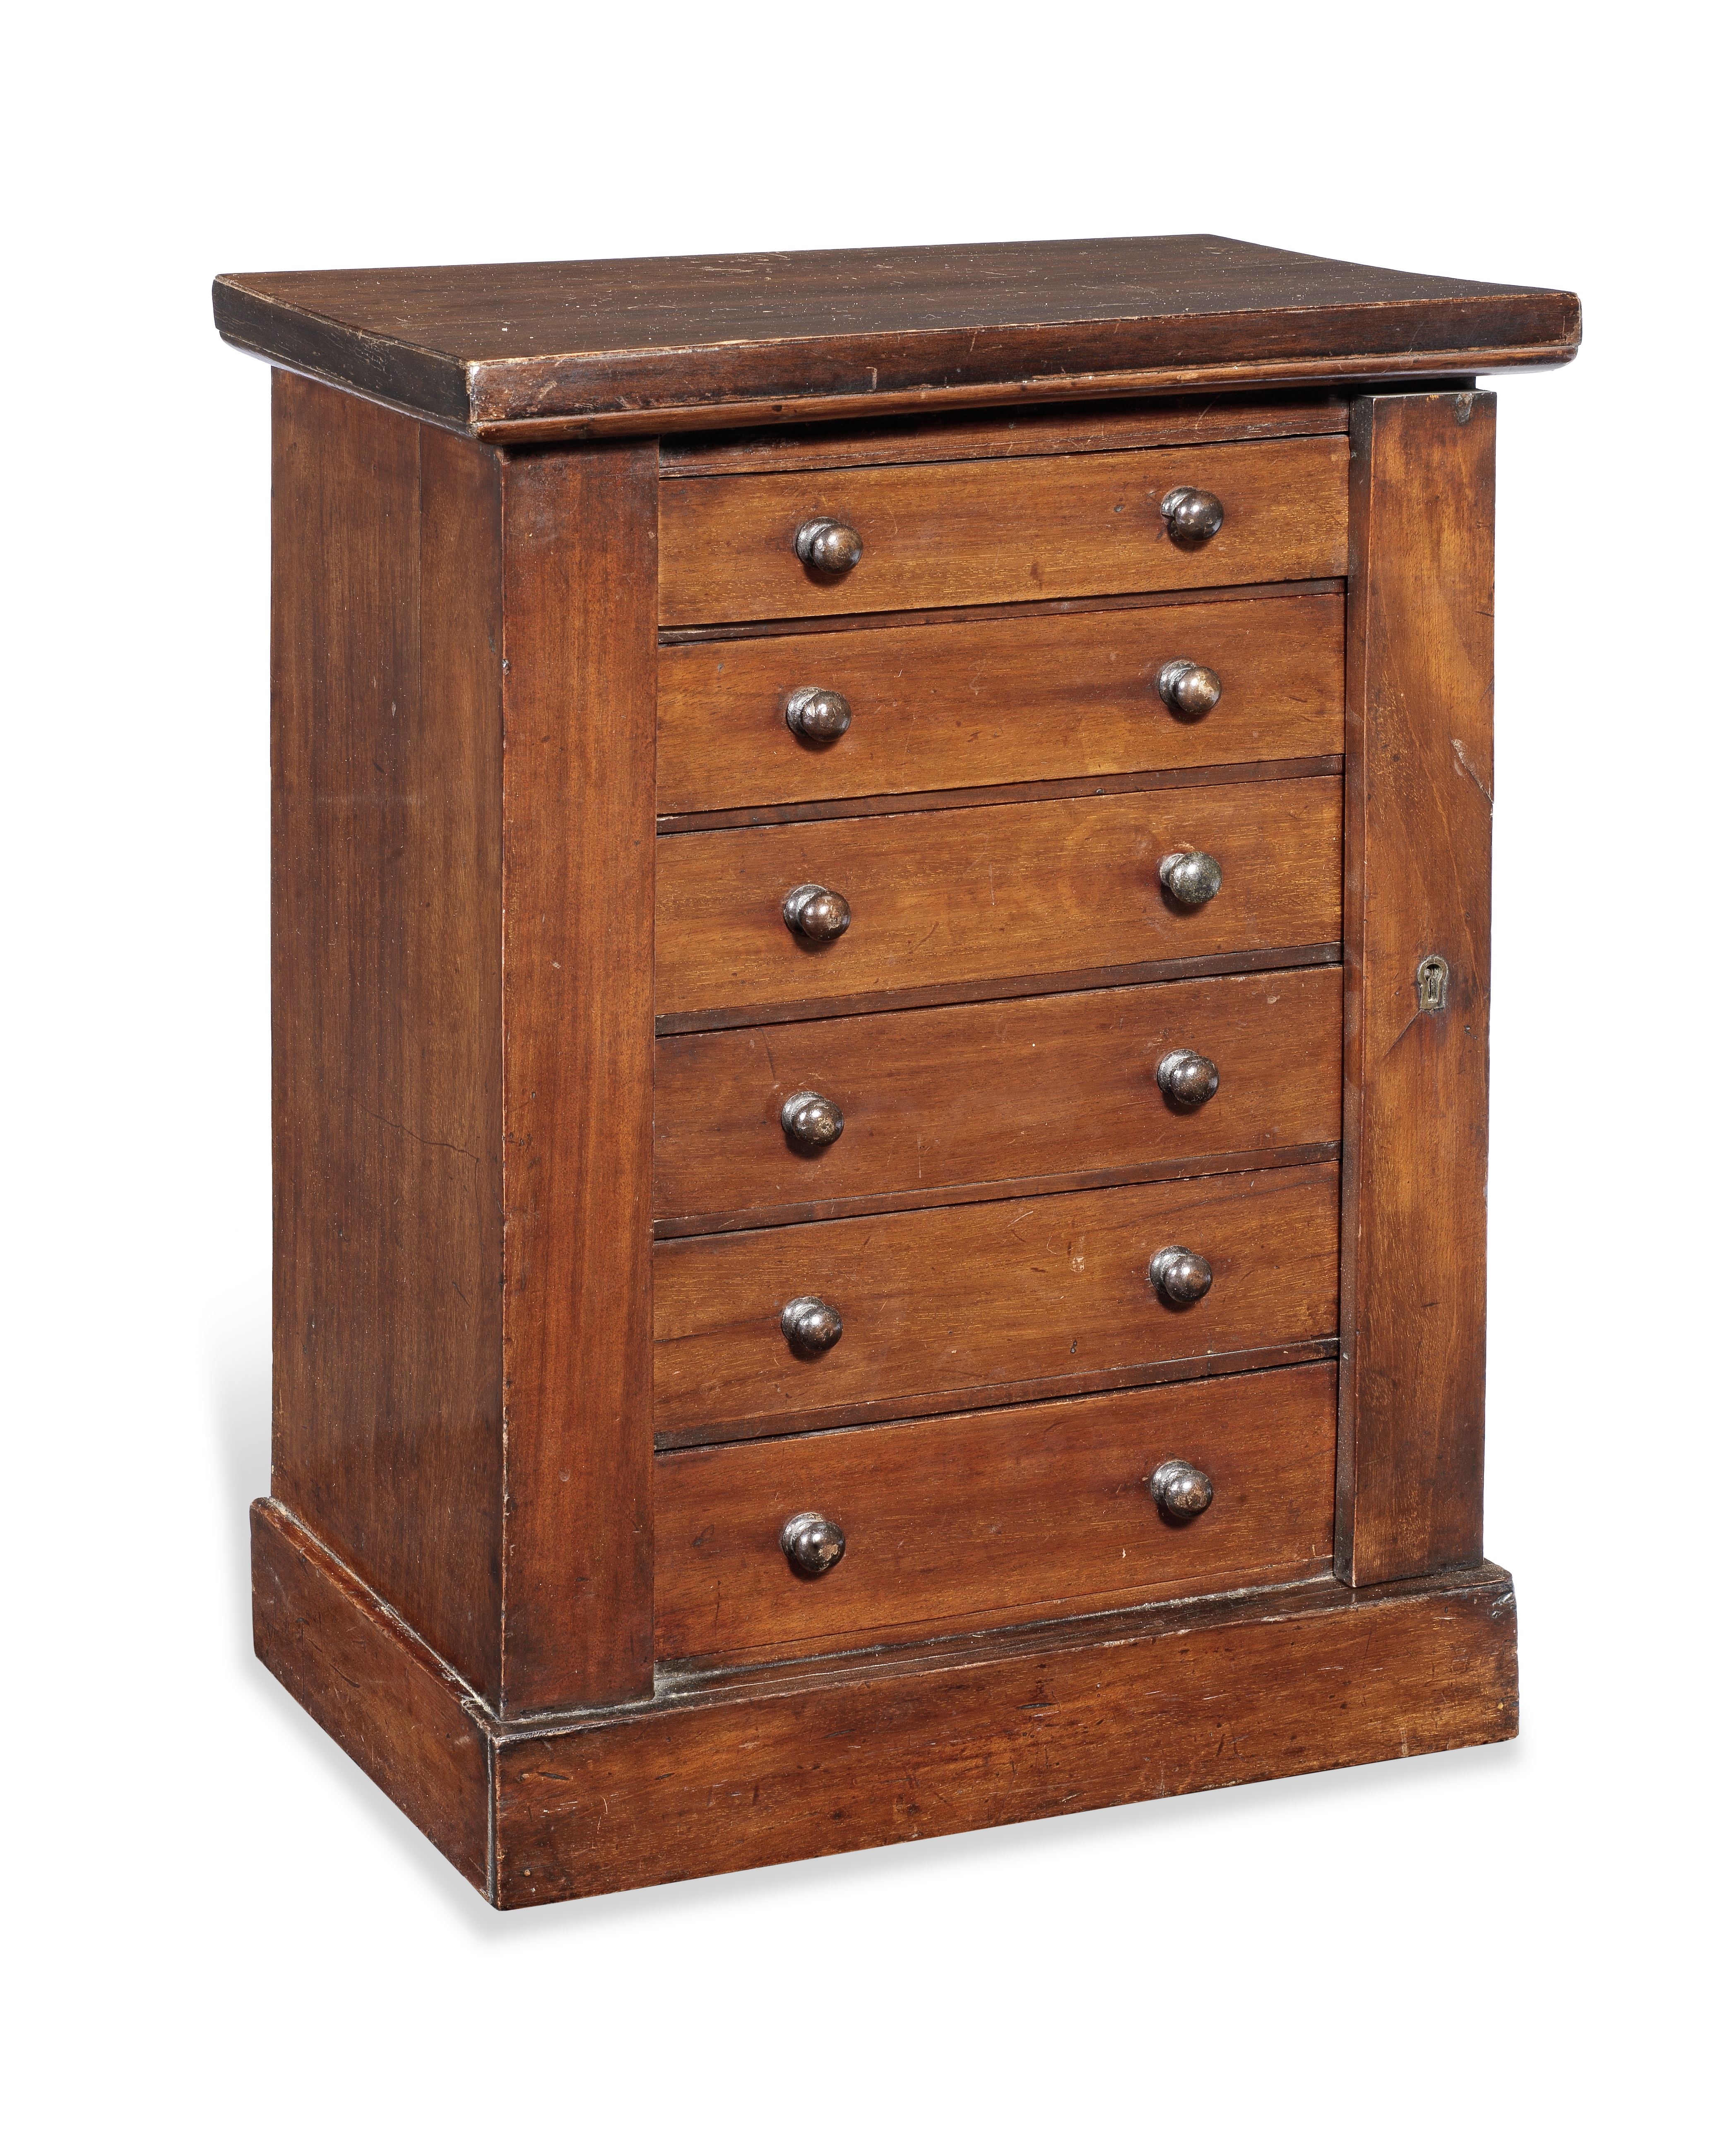 A Victorian mahogany miniature or child's mahogany Wellington chest